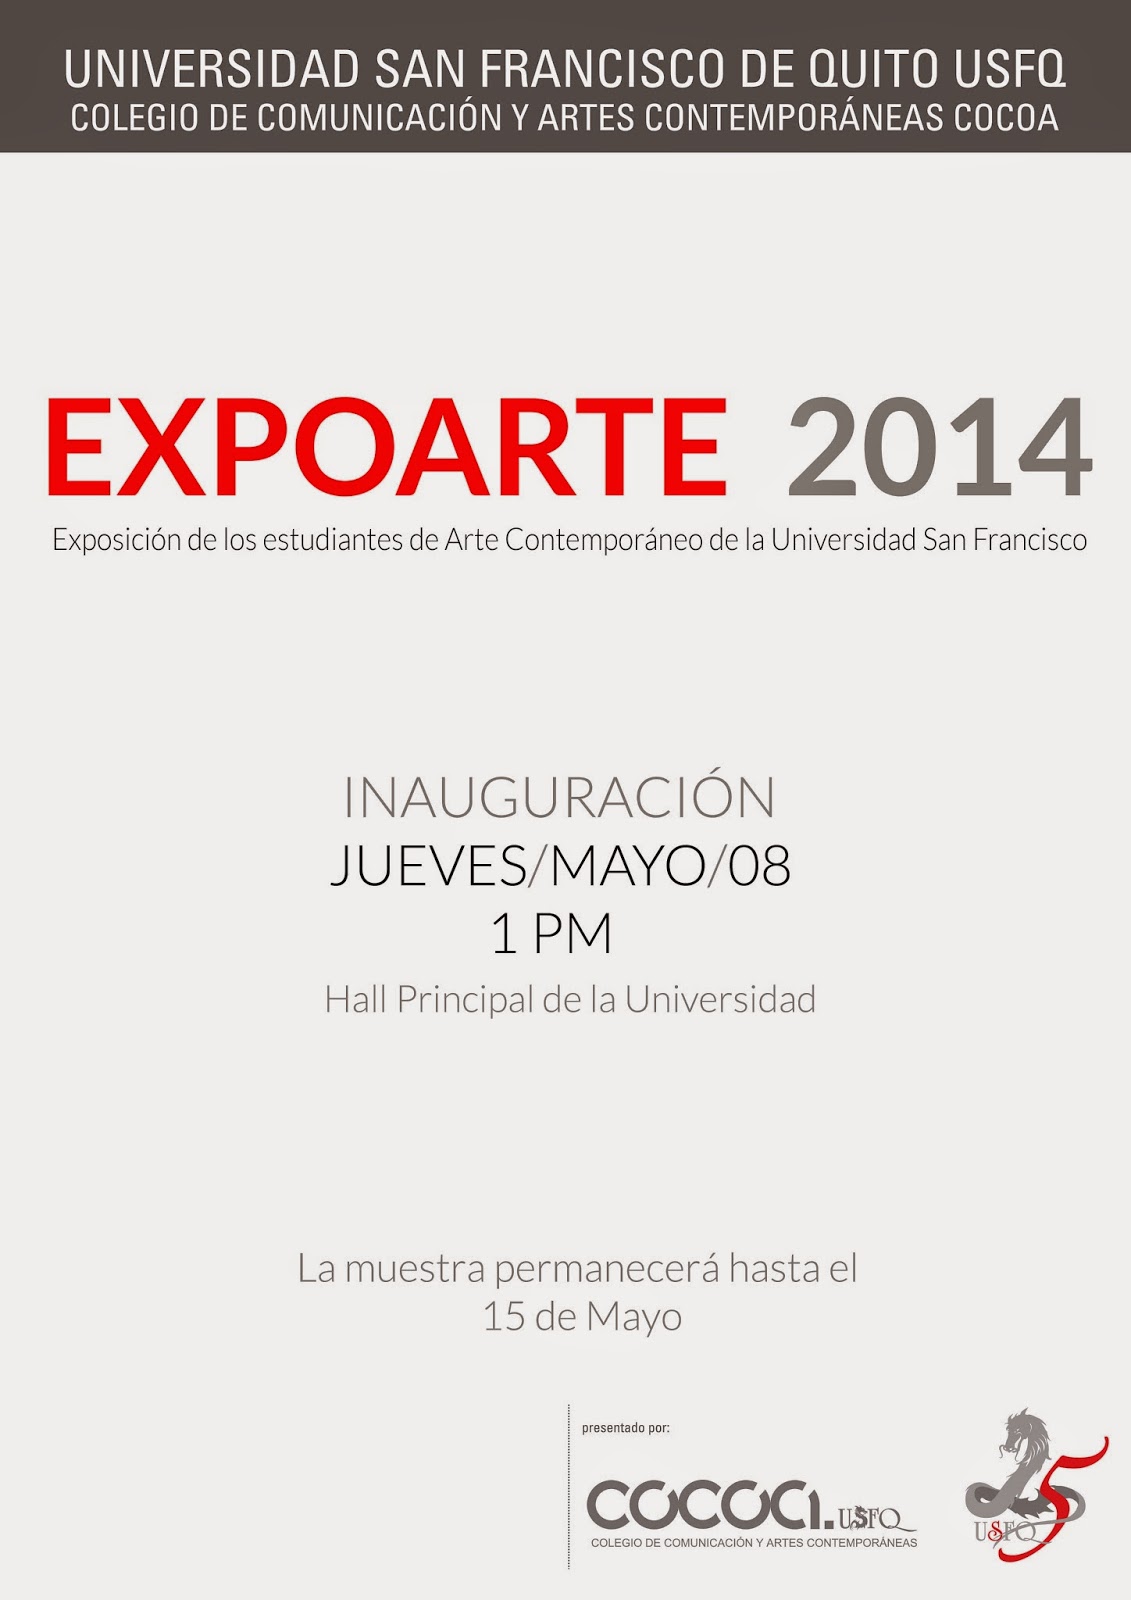 El Colegio de Comunicación y Artes Contemporáneas-USFQ invita a la inauguración de Expoarte 2014. 08/mayo, 13h00, Hall Principal-USFQ